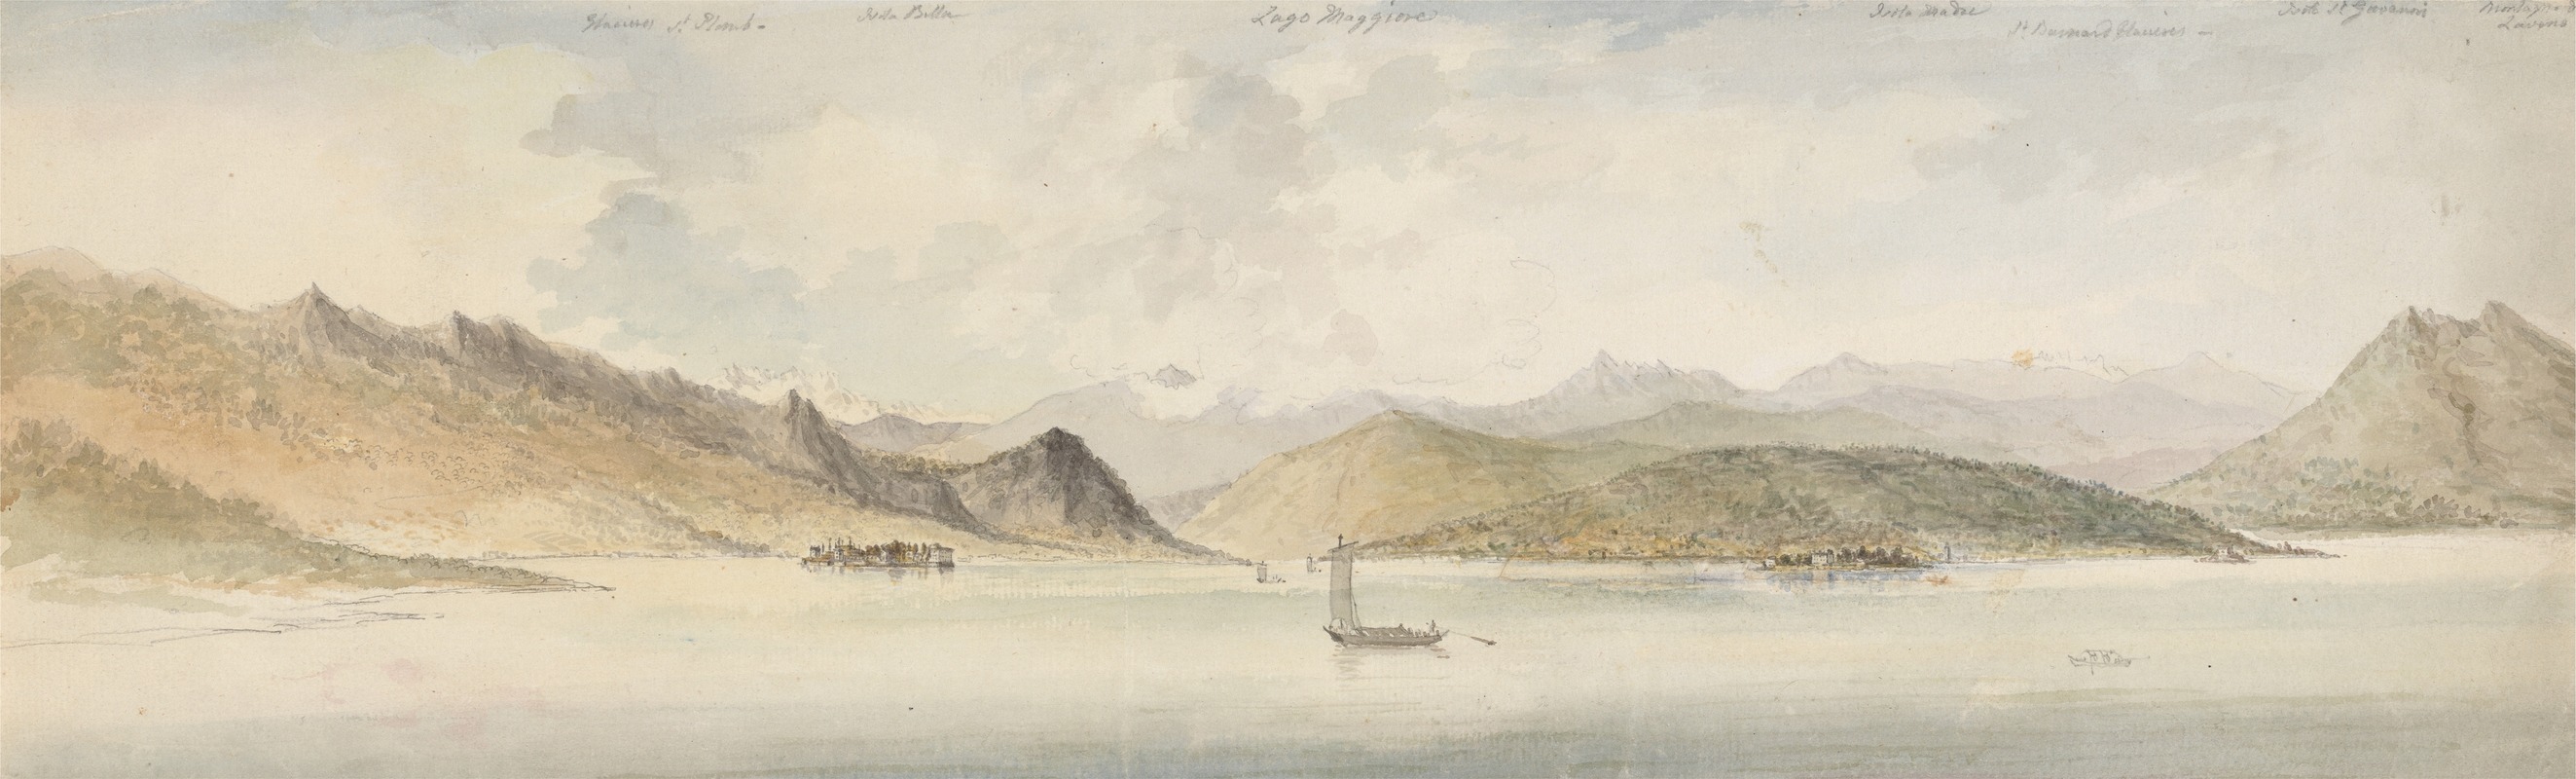 Charles Gore - Lago Maggiore and the Borromean Islands